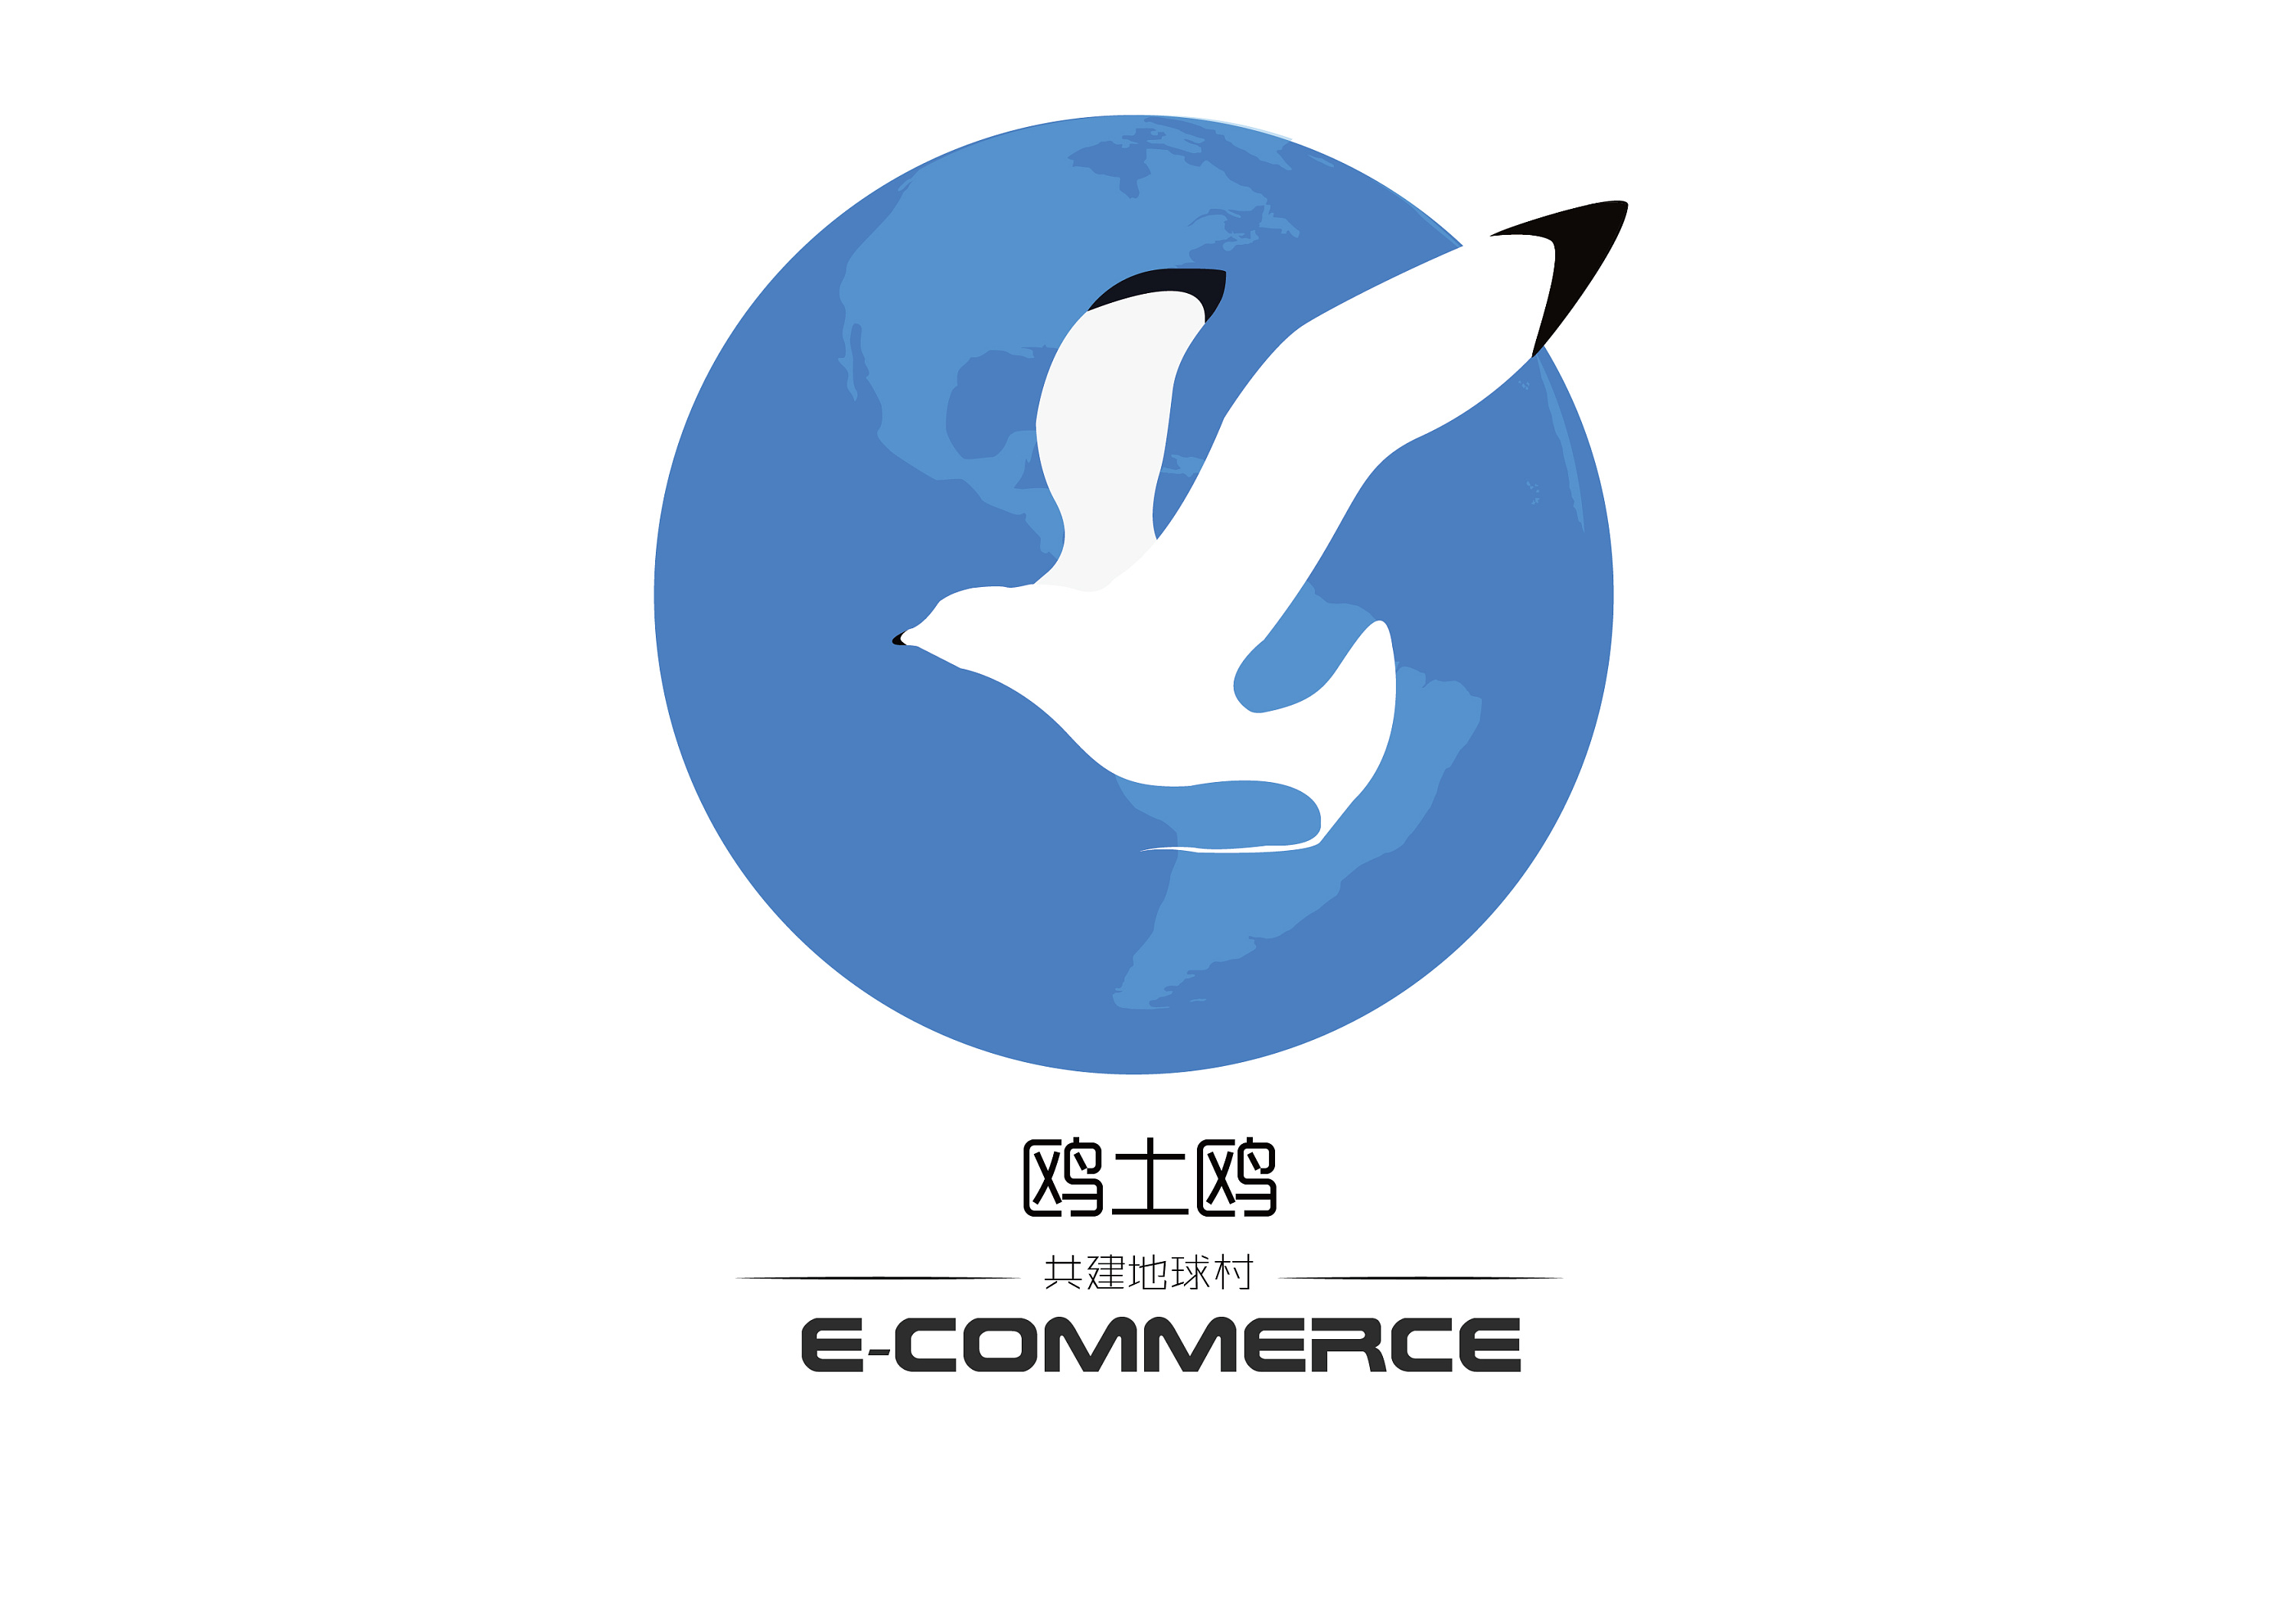 海鸥logo素材图片